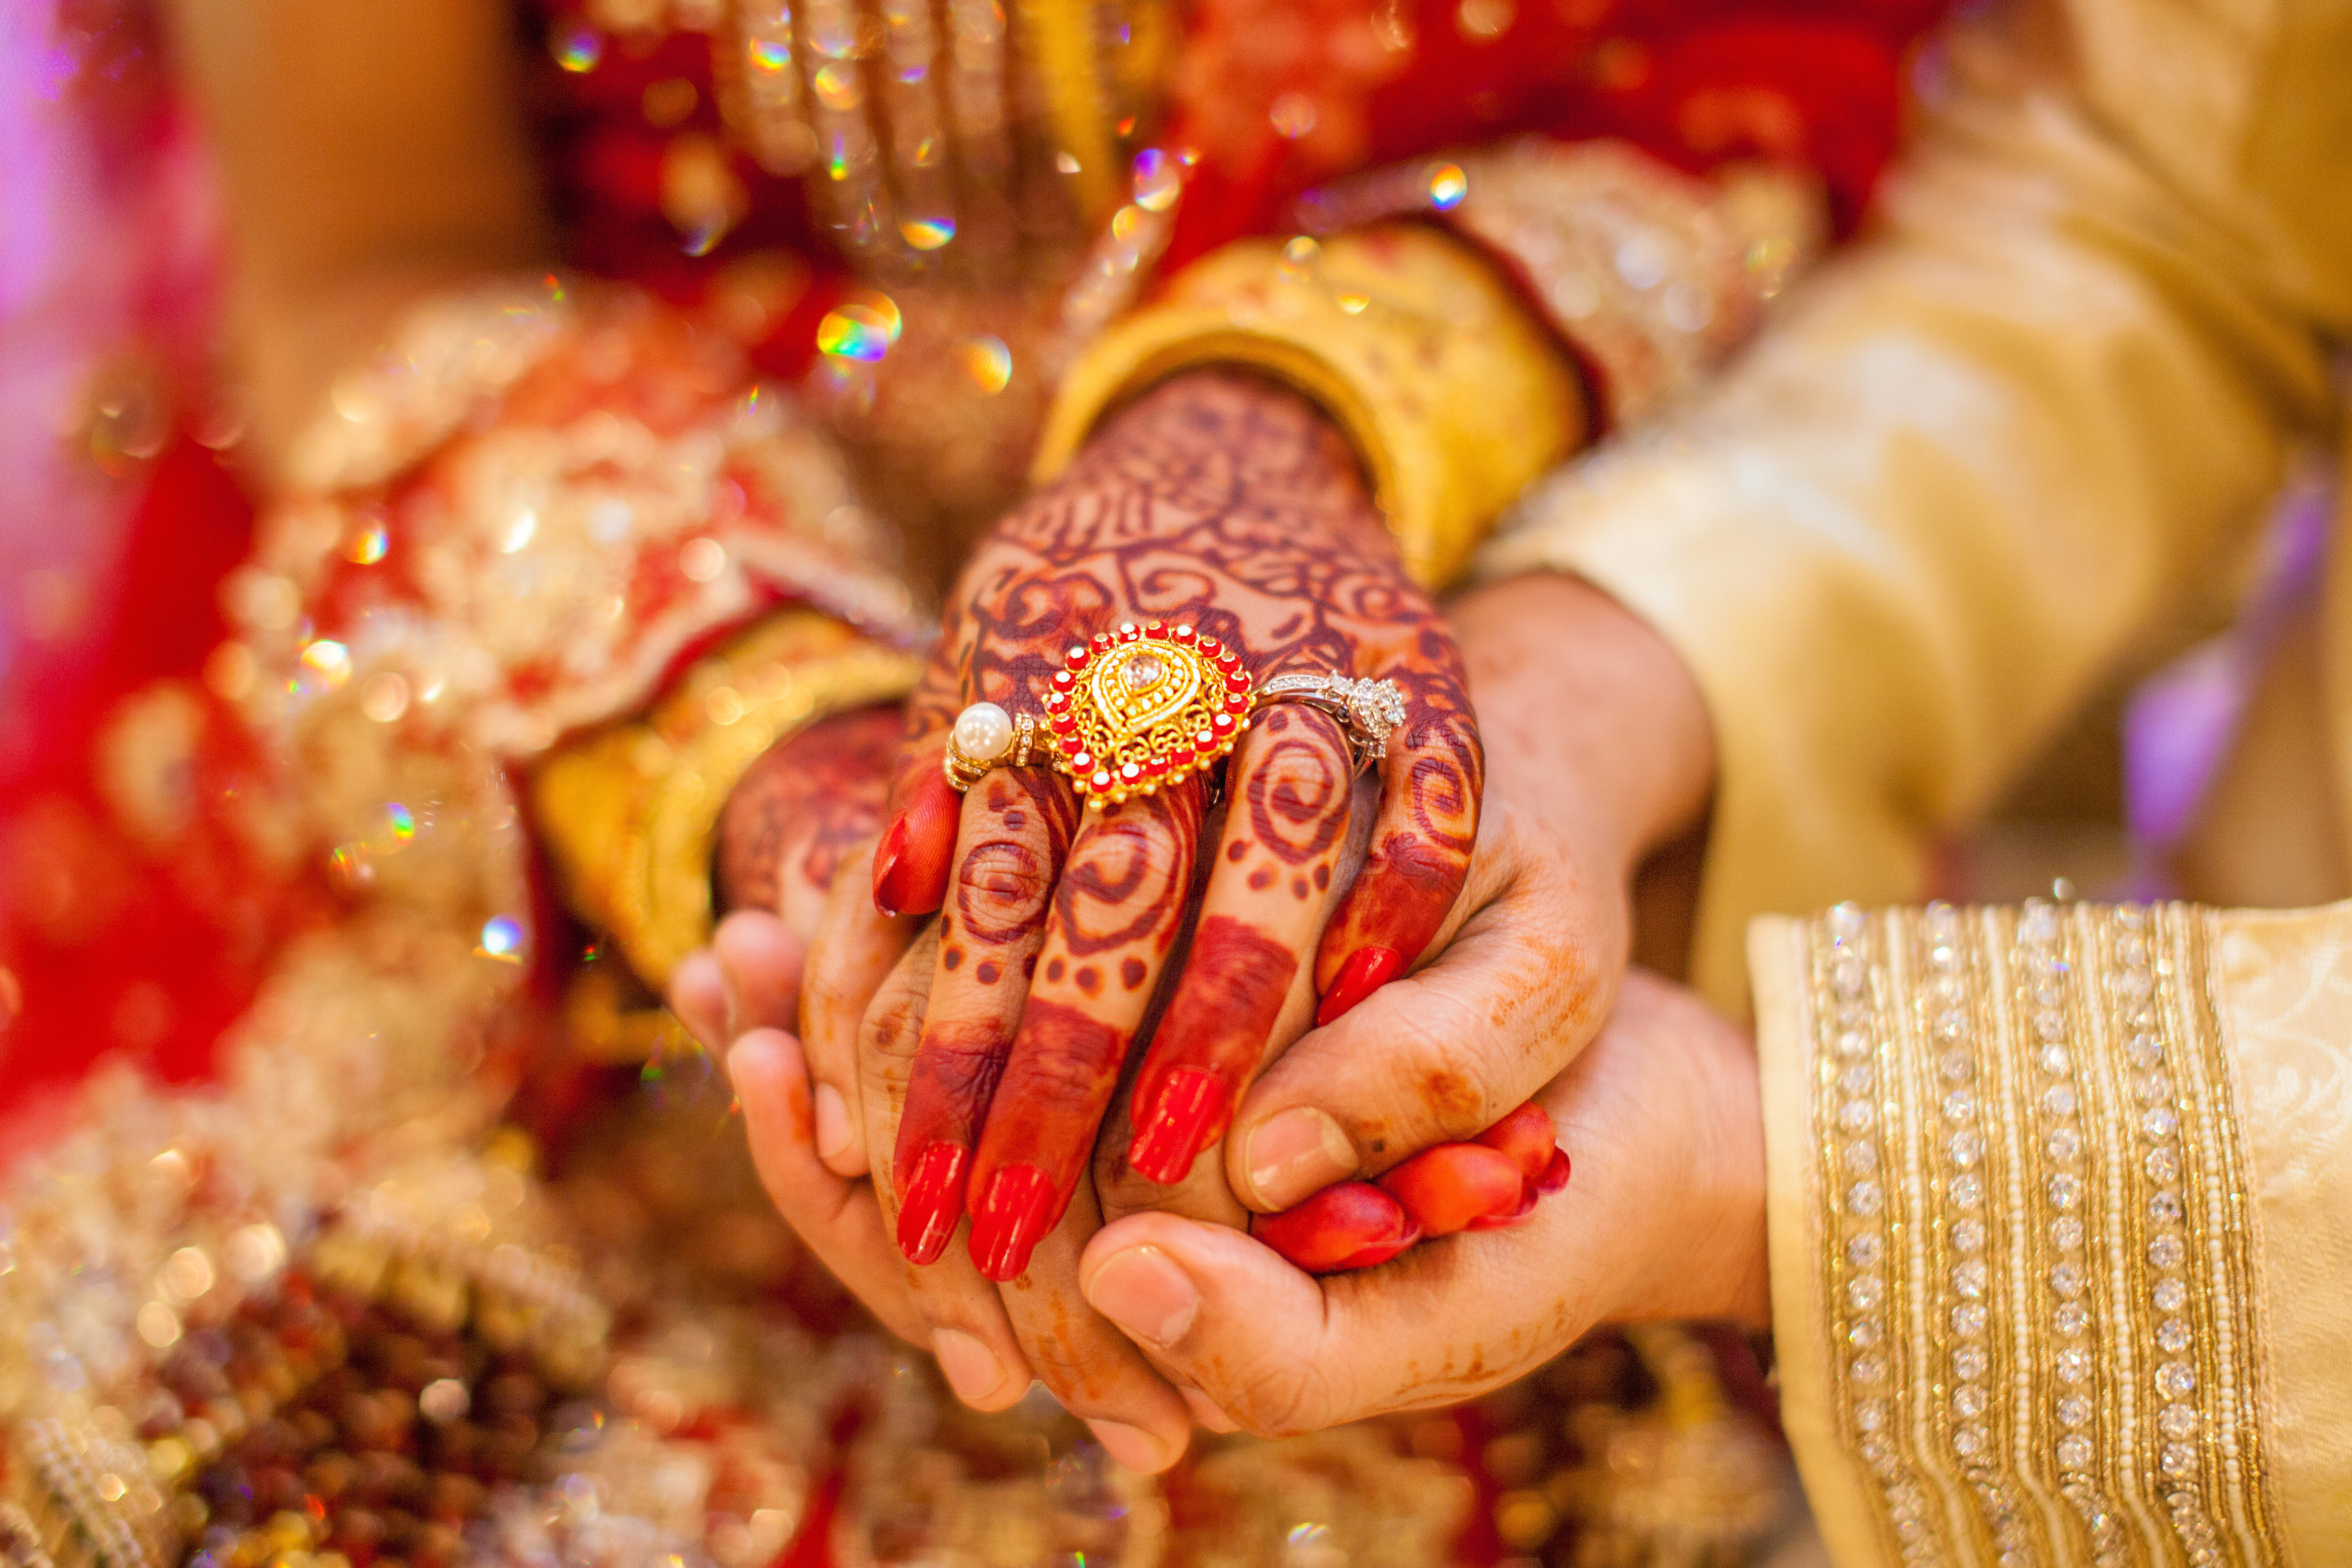 Unas manos de mujer con anillos de oro y henna | Foto: Shutterstock